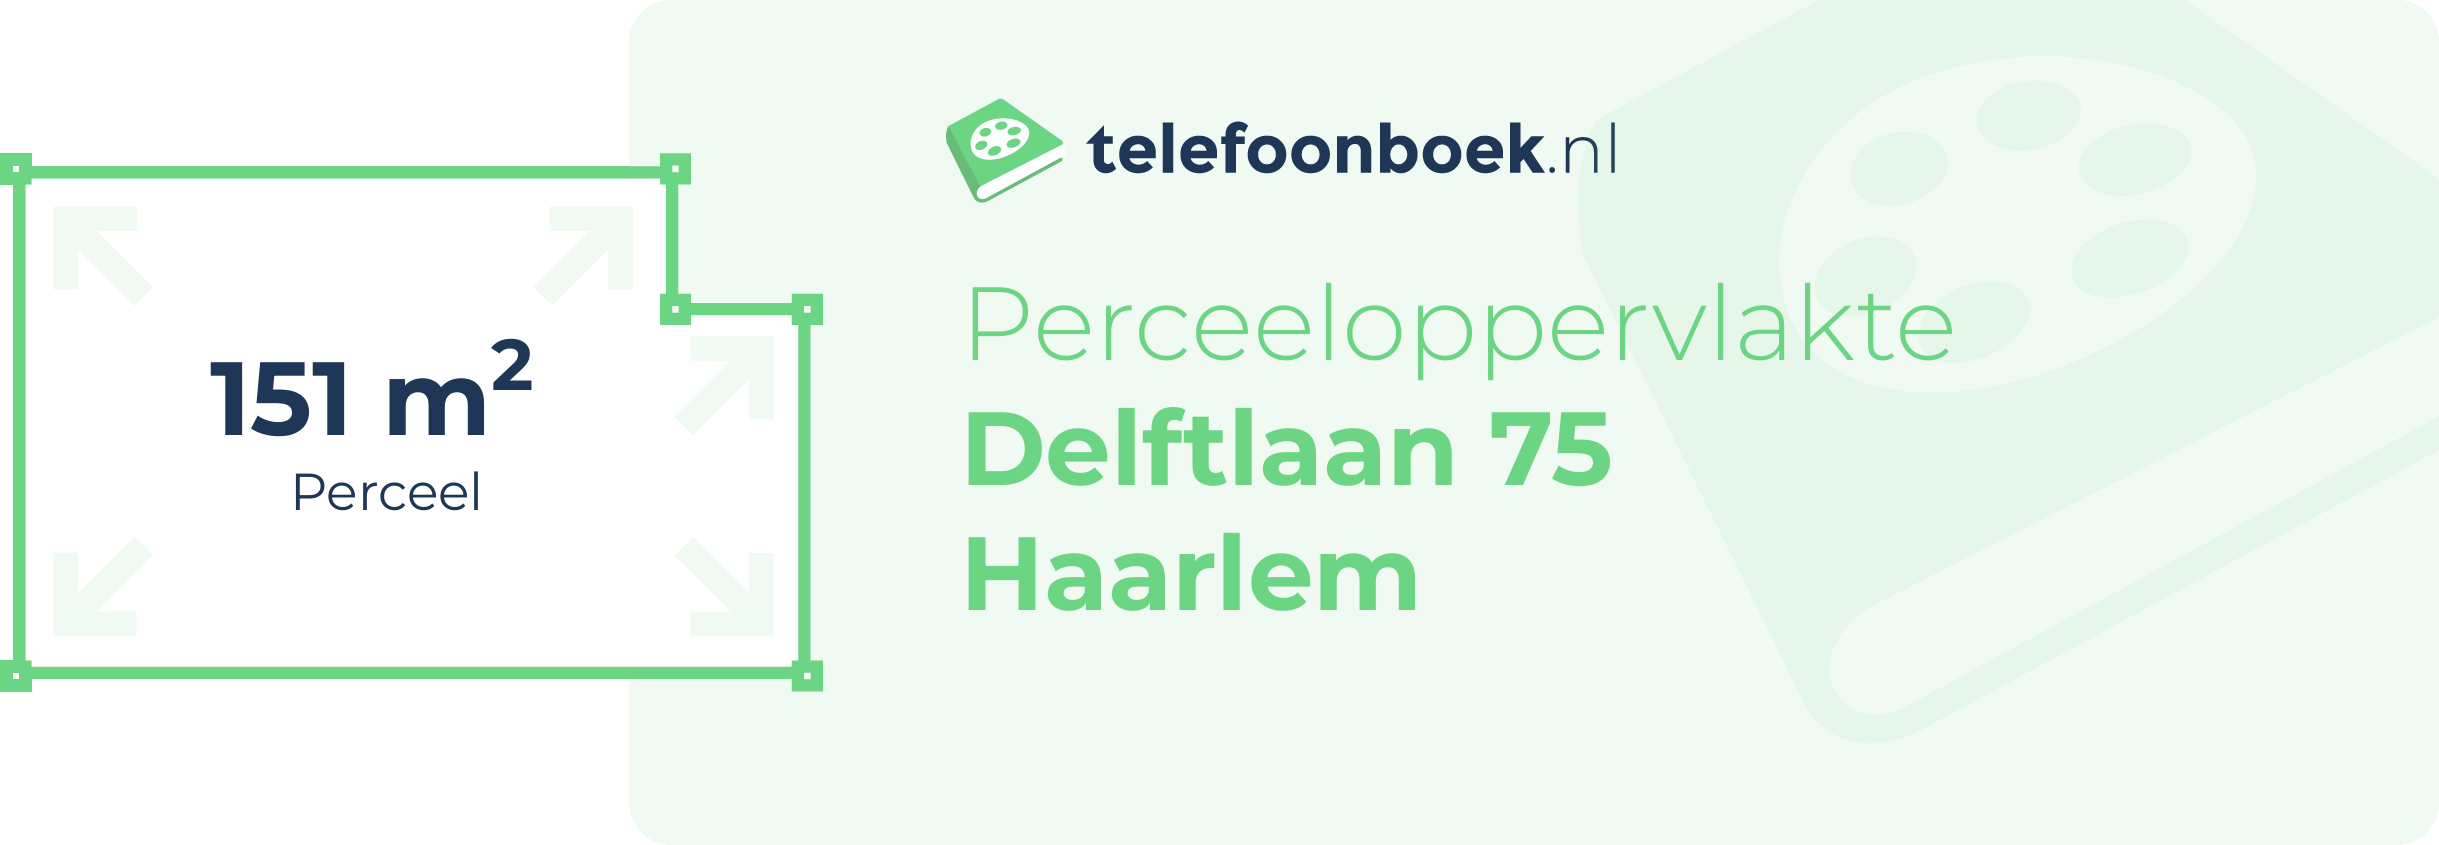 Perceeloppervlakte Delftlaan 75 Haarlem